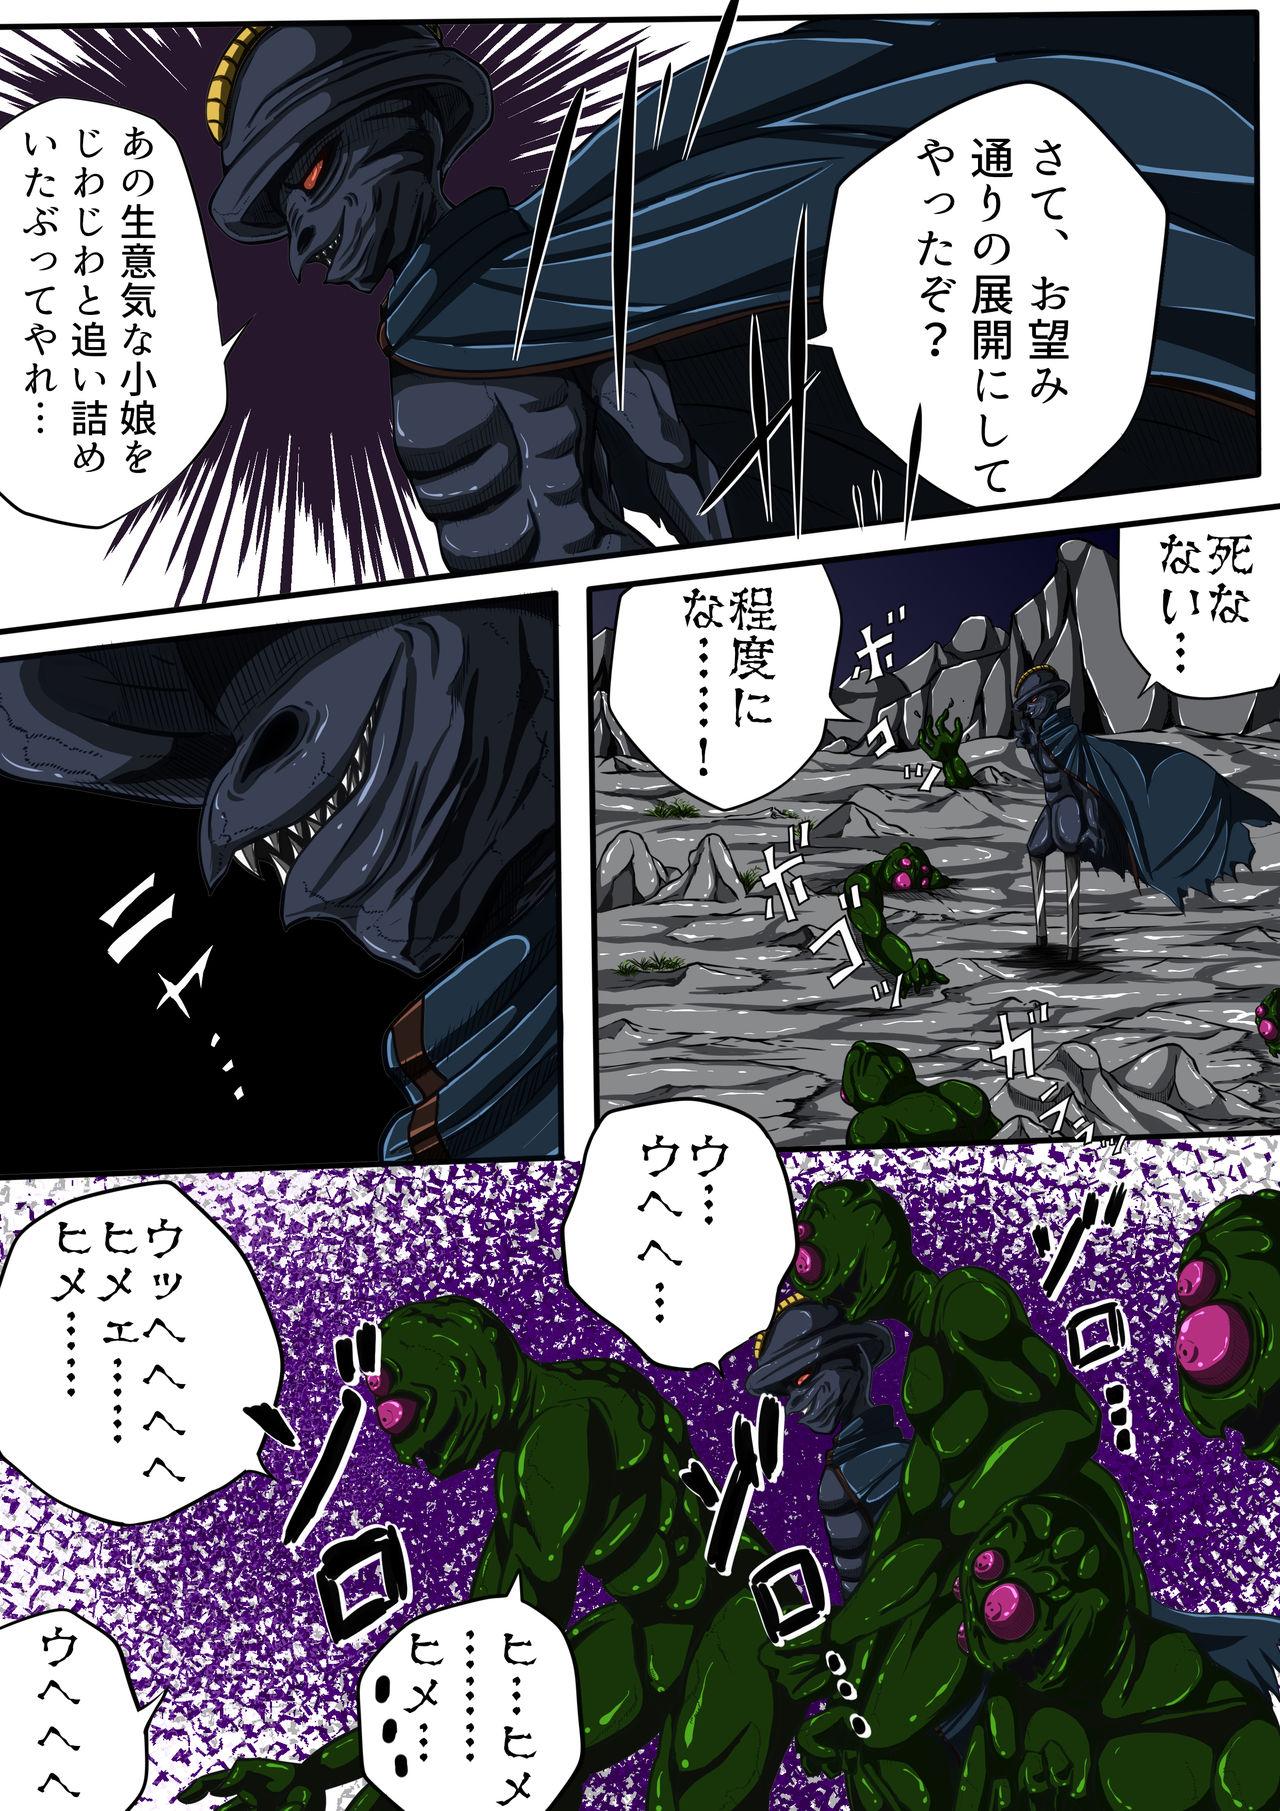 Fiora Crisis III - Hikari Crisis! 22